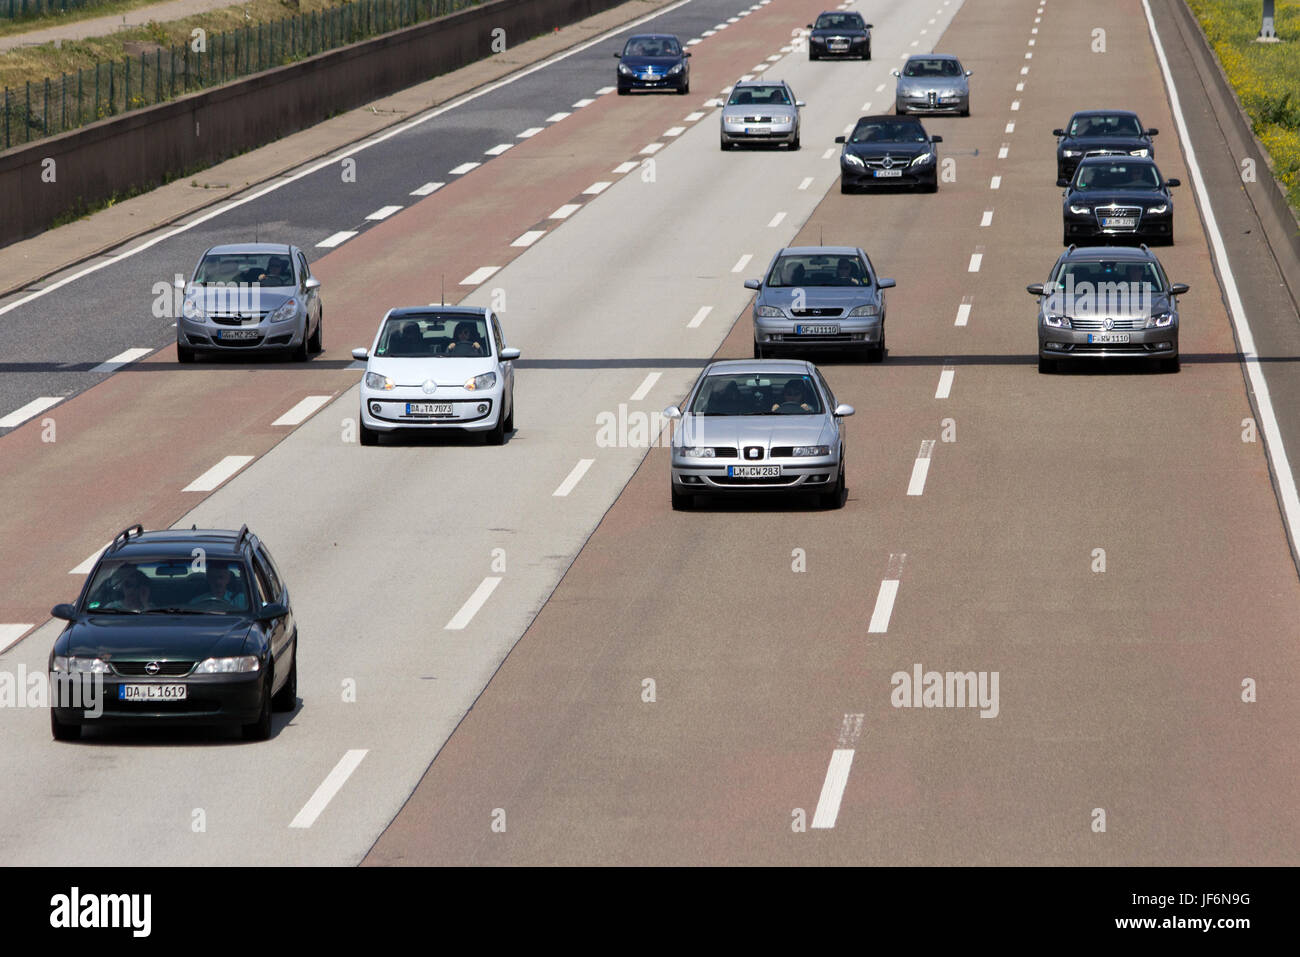 Francoforte, Germania - 11 Luglio: il traffico su una autostrada tedesca sulla luglio 11, 2013 a Francoforte in Germania. Autostrade tedesche non hanno alcun genere speedlimit e rango Foto Stock